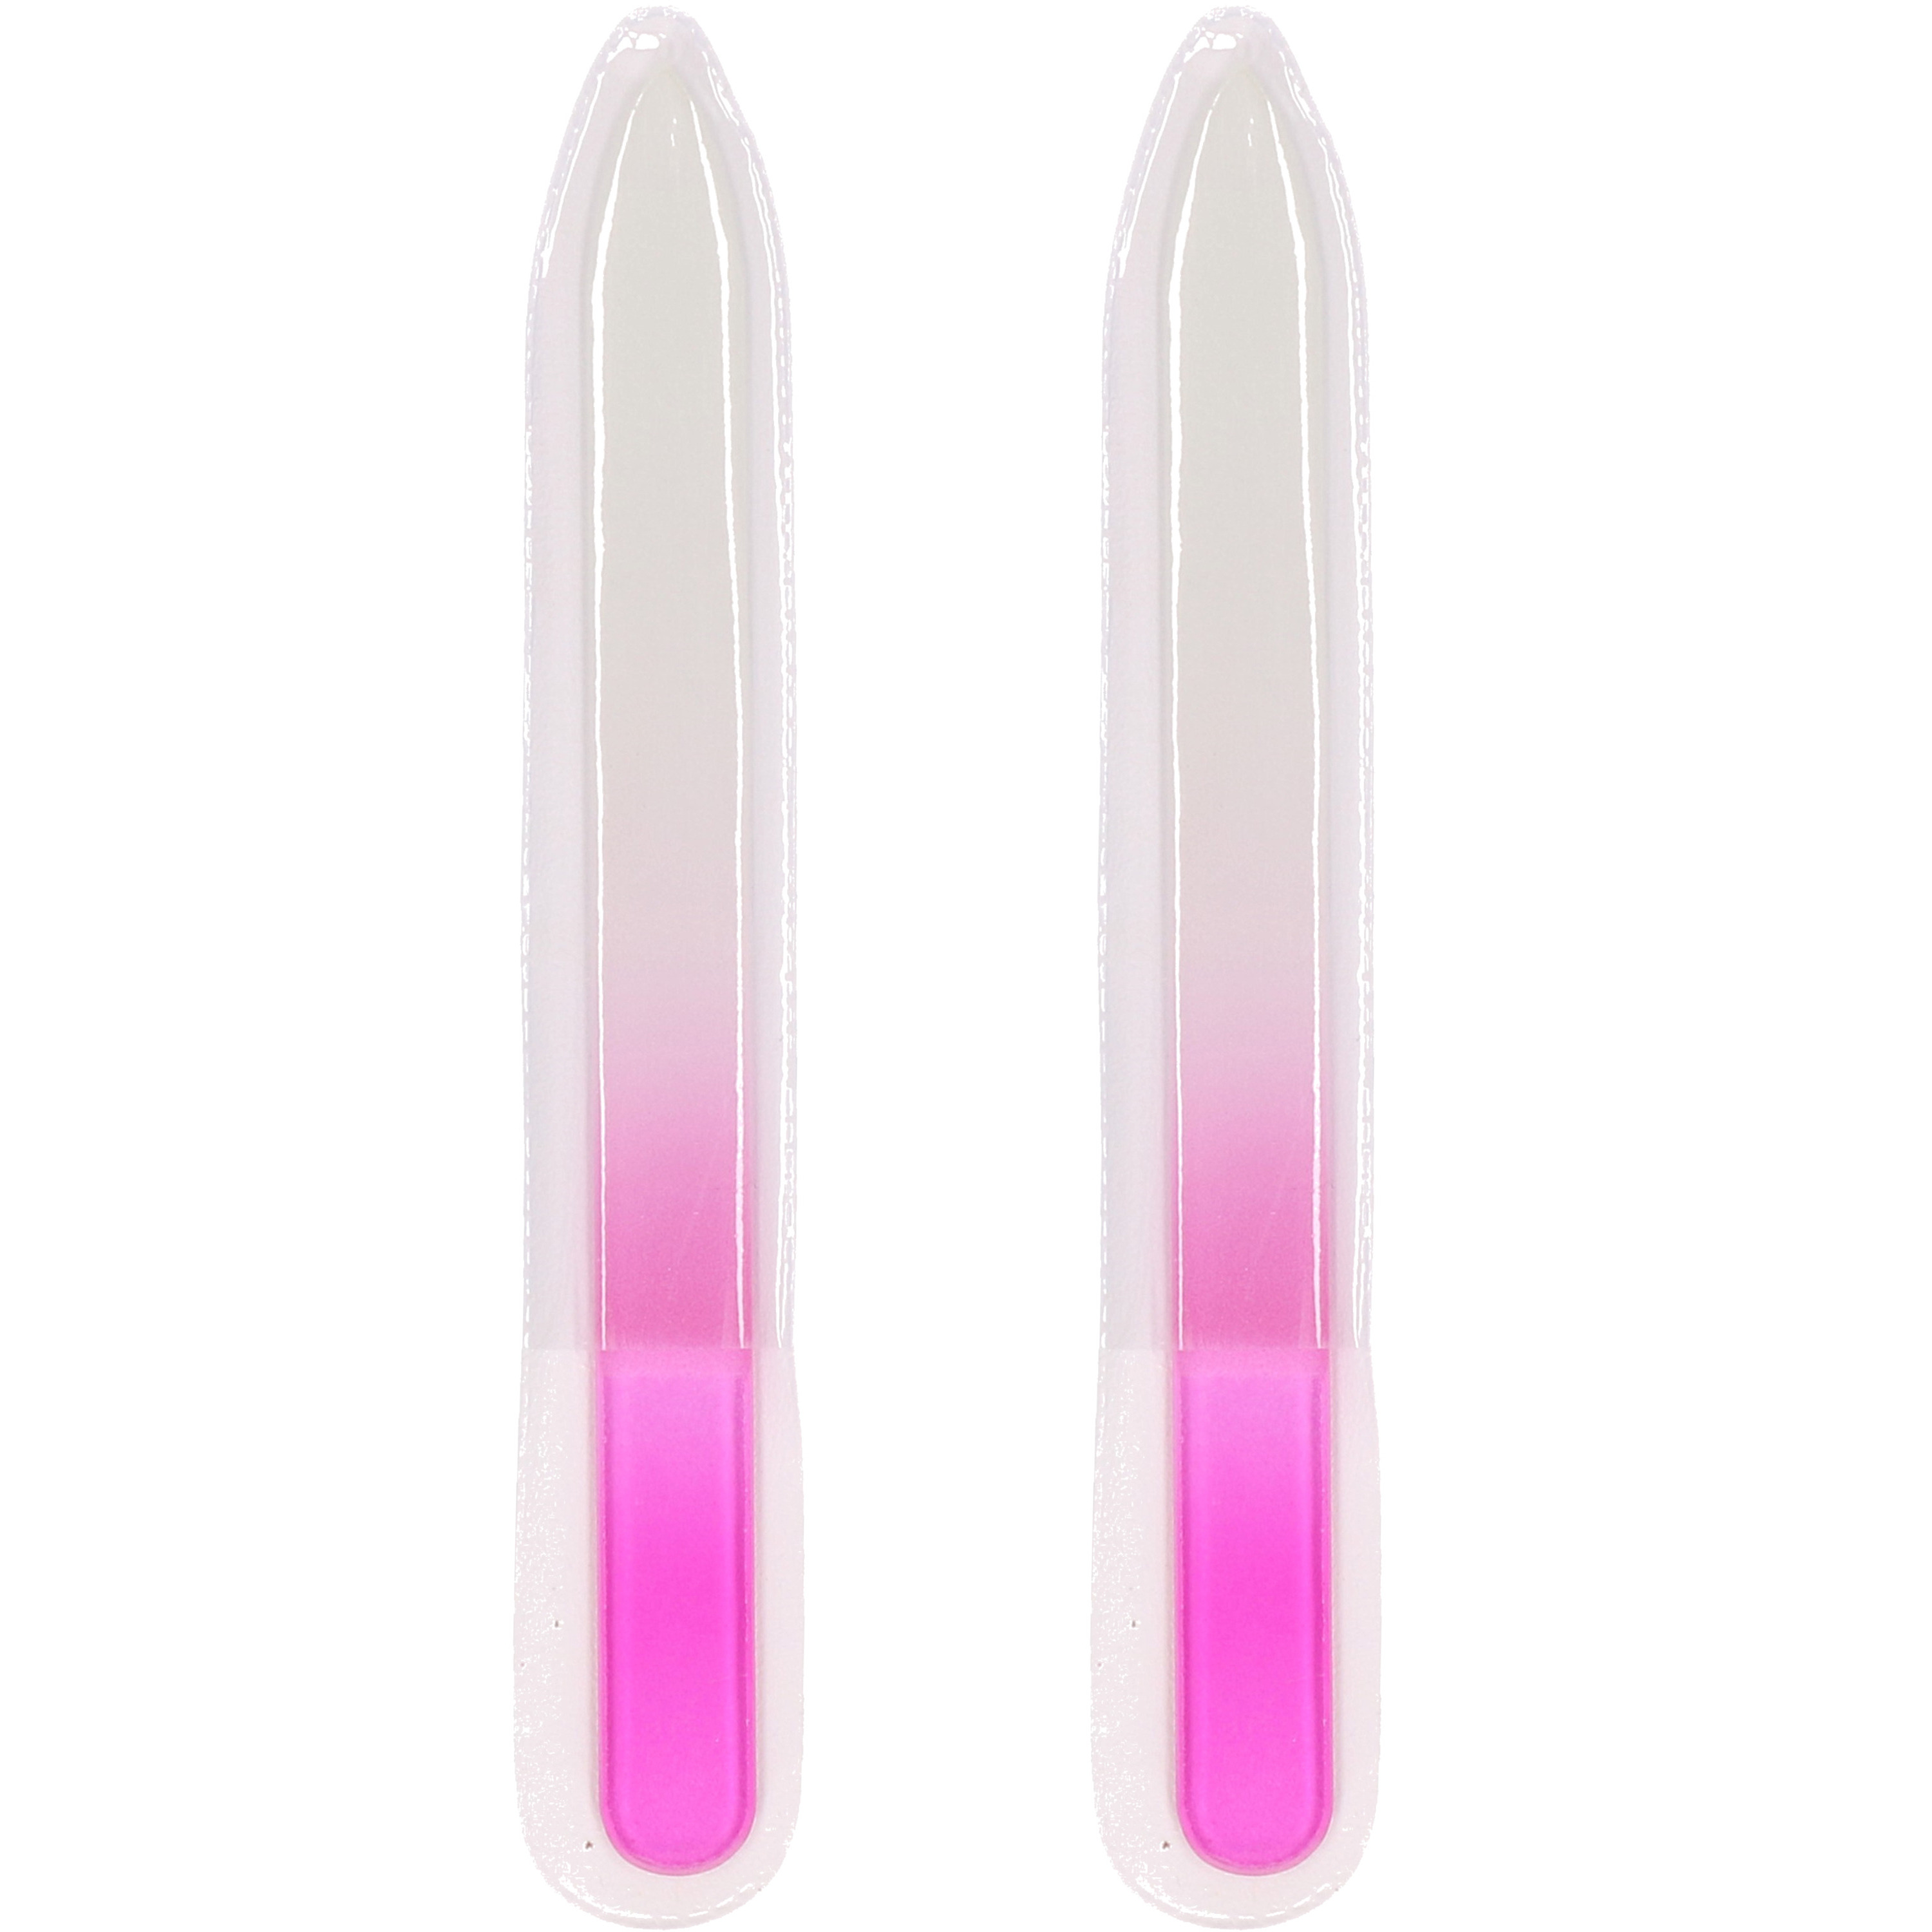 Nagelvijlen van glas 2x roze 14 cm in hoesje